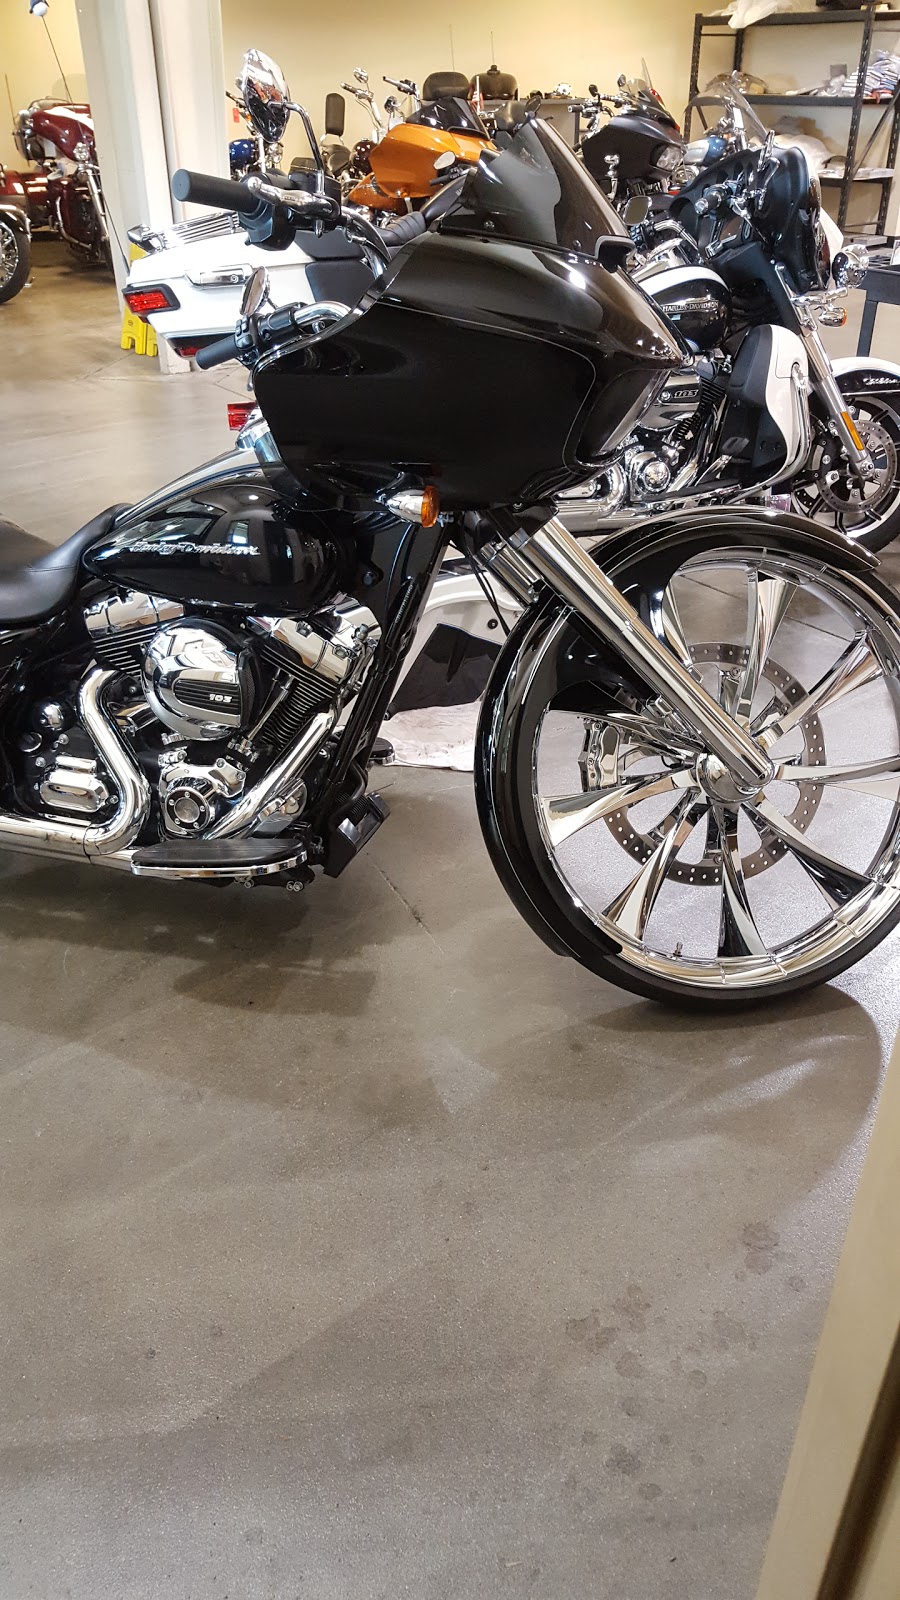 Great South Harley-Davidson | 185 GA-16, Newnan, GA 30263, USA | Phone: (678) 228-8213